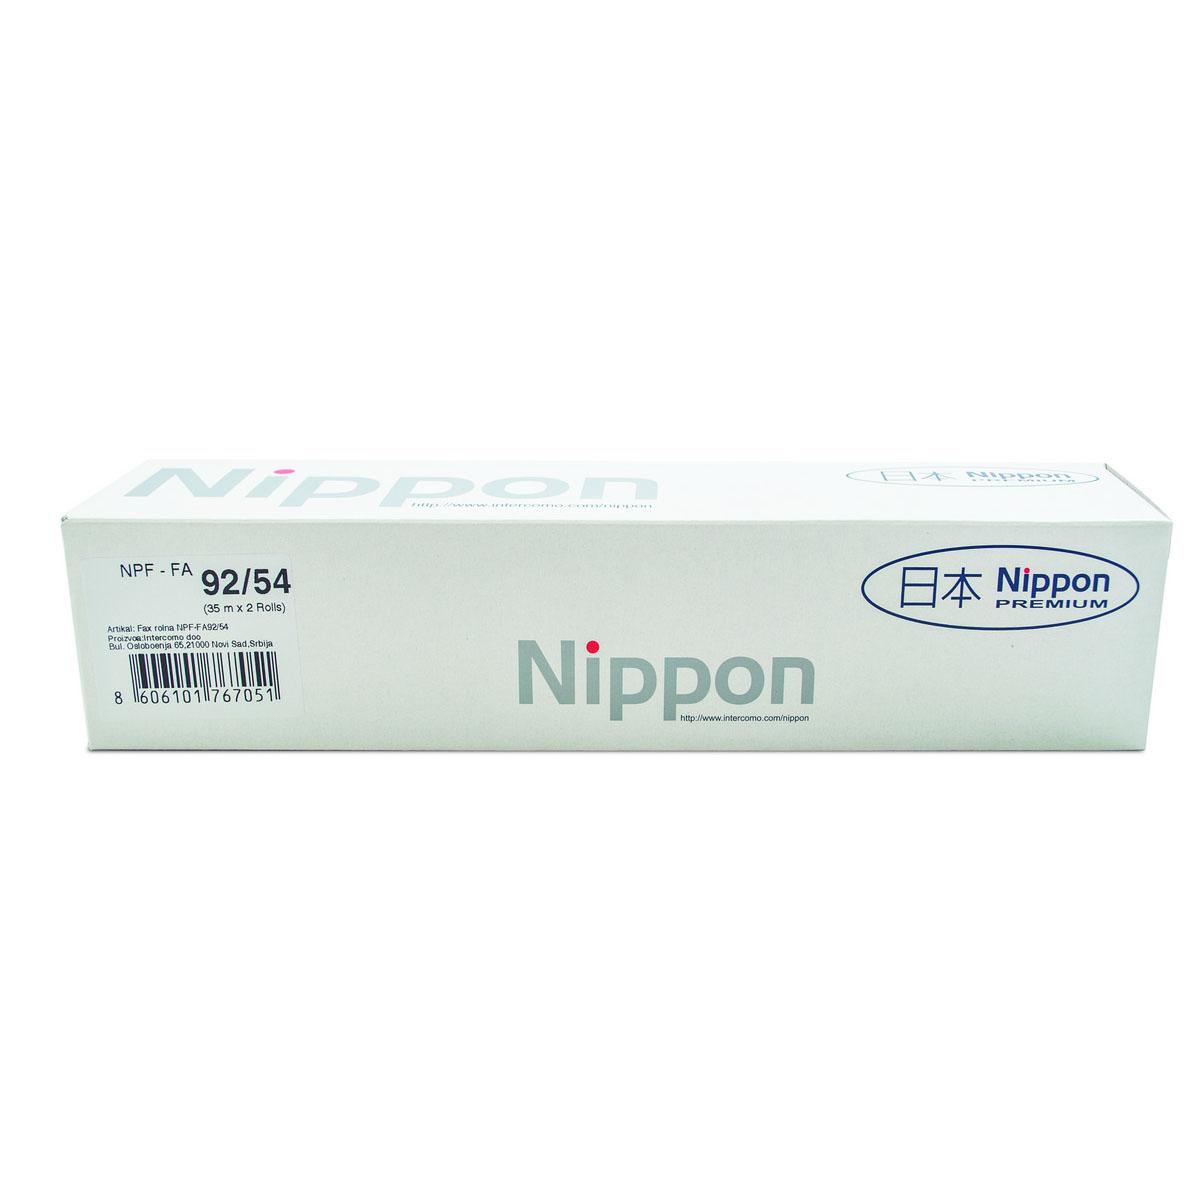 NIPPON Fax Film Panasonic KX-FA 92/54